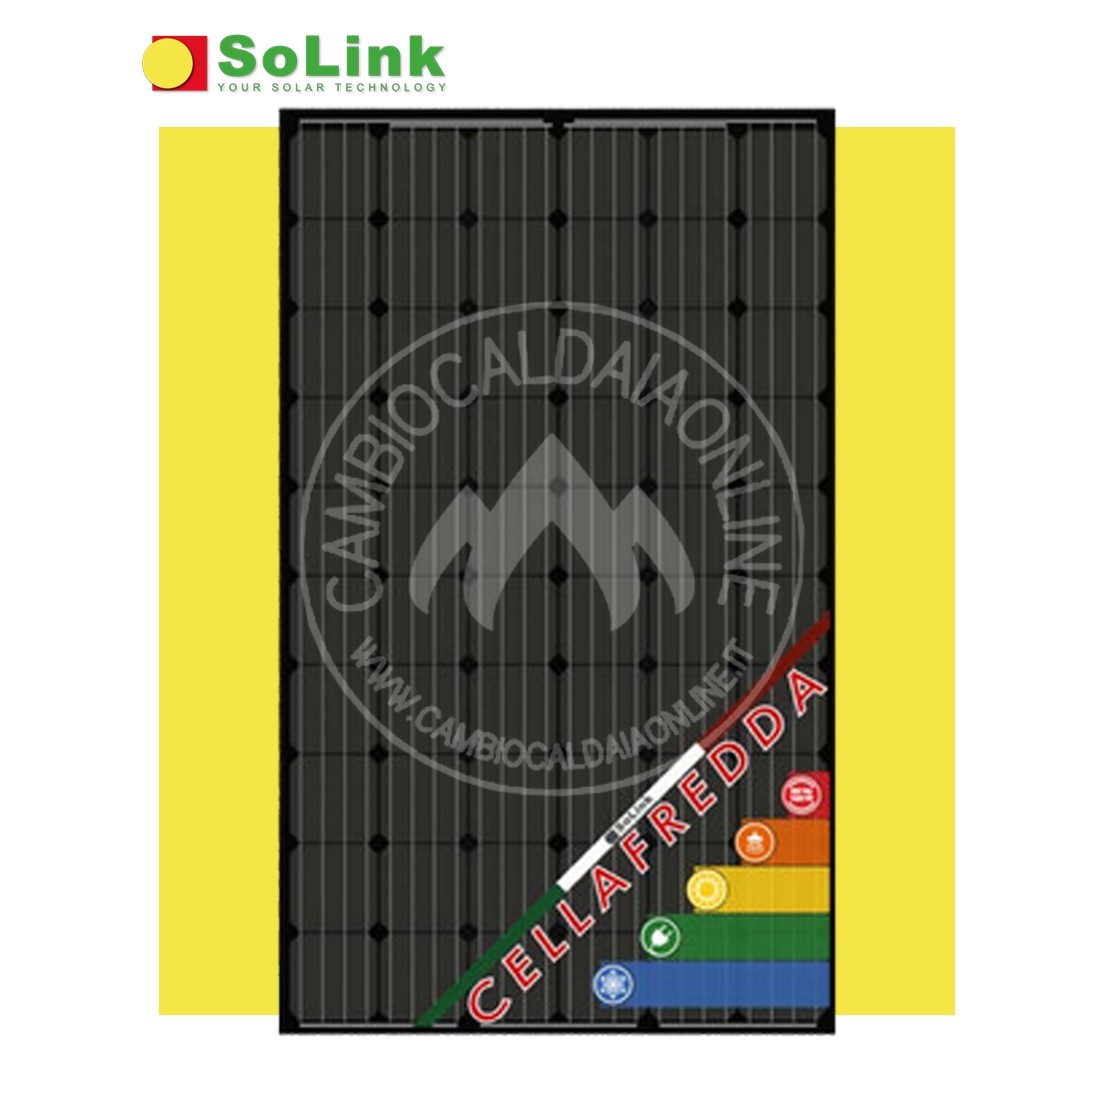 Cambiocaldaiaonline.it SOLINK SoLink pannello fotovoltaico ibrido* CELLAFREDDA HCF300M (300W elettr. + 1020W termici + 1,65mq) Cod: HCF300-342